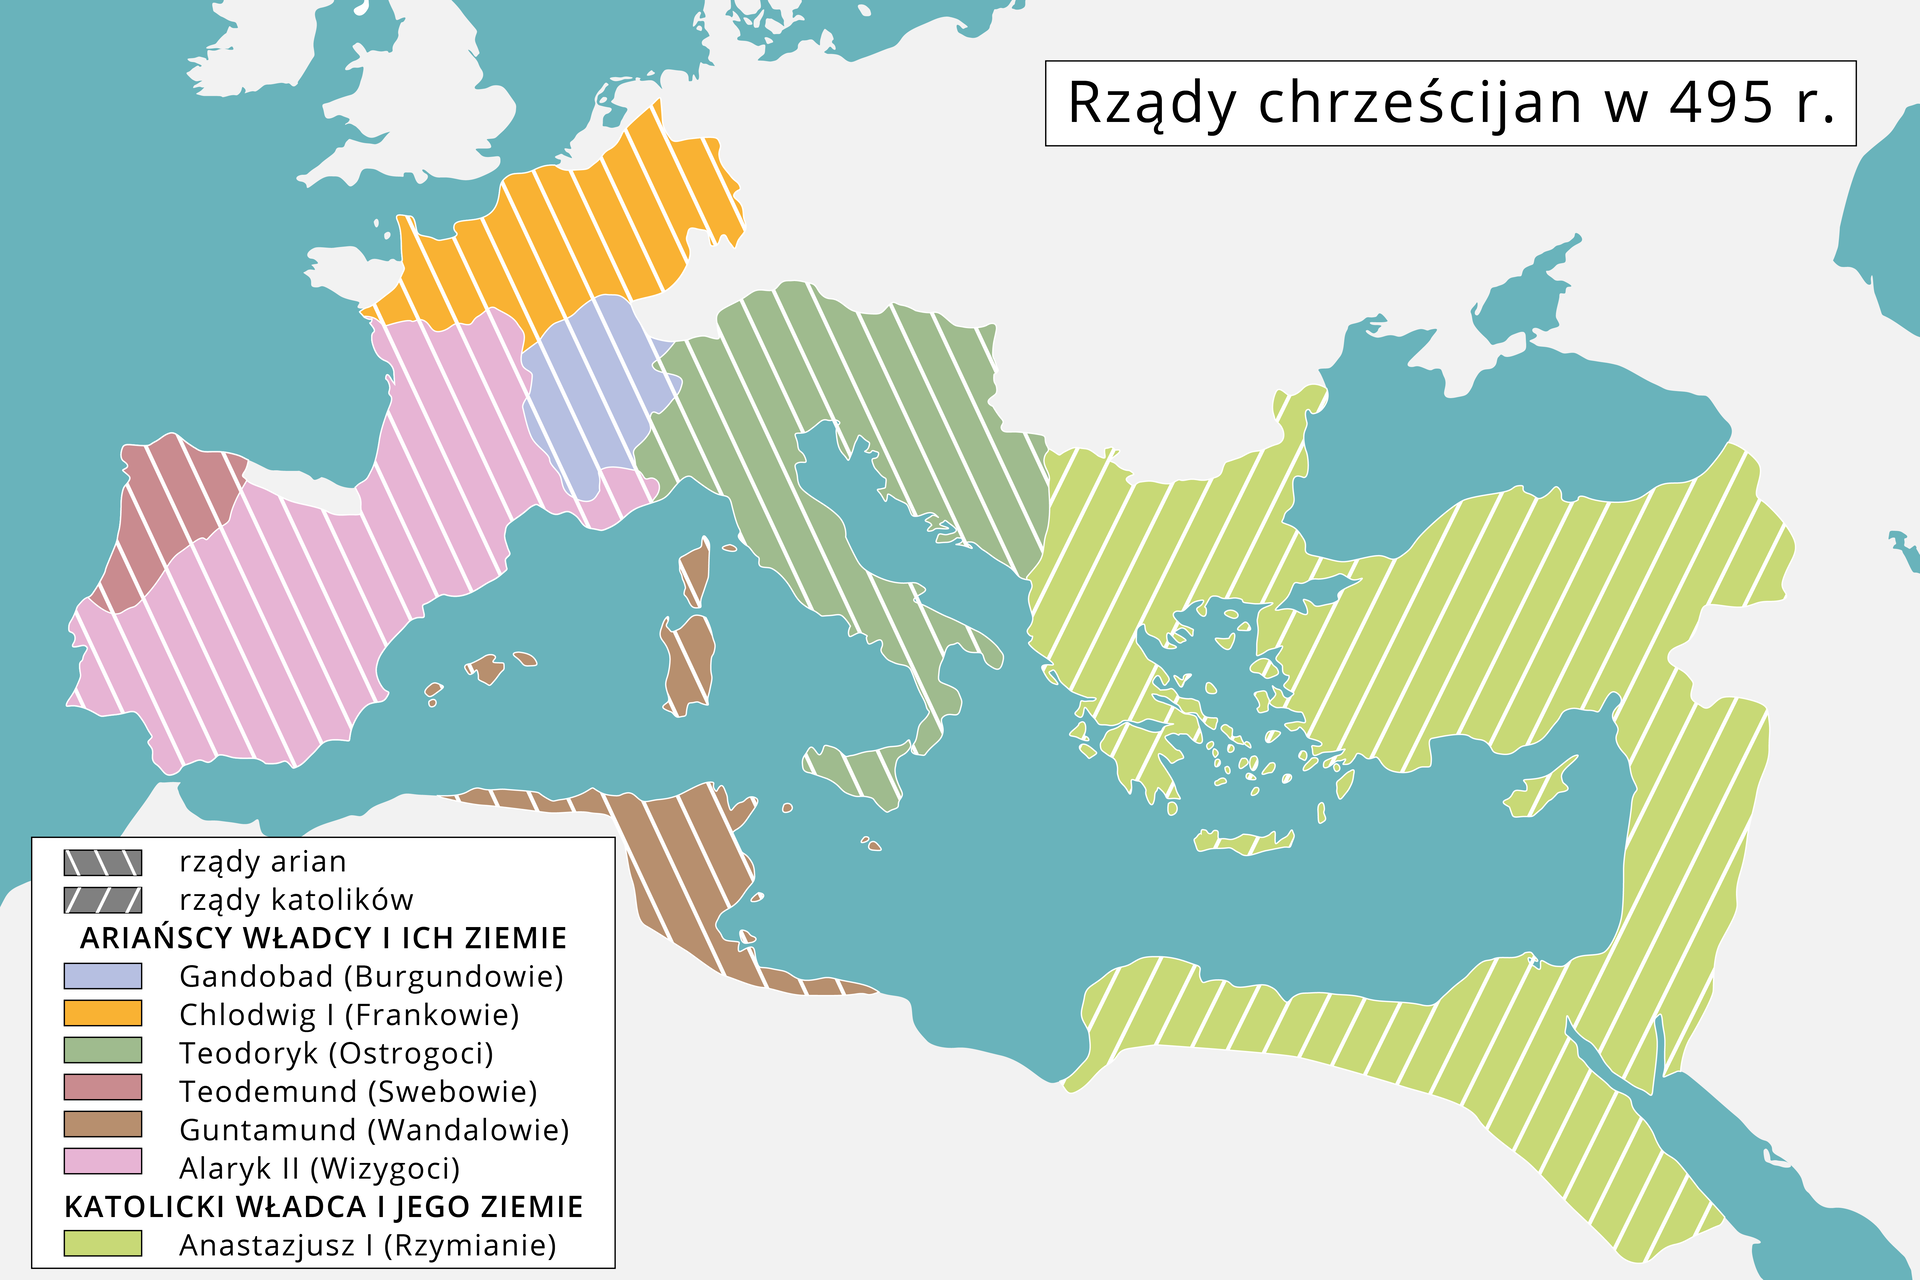 Ilustracja przedstawia mapę Europy i północnej Afryki, z oznaczonymi terenami rządzonymi przez chrześcijan na południowo‑wschodniej części kontynentu oraz terenami rządzonymi przez Arian czyli południowo- środkowa i zachodnia część kontynentu.